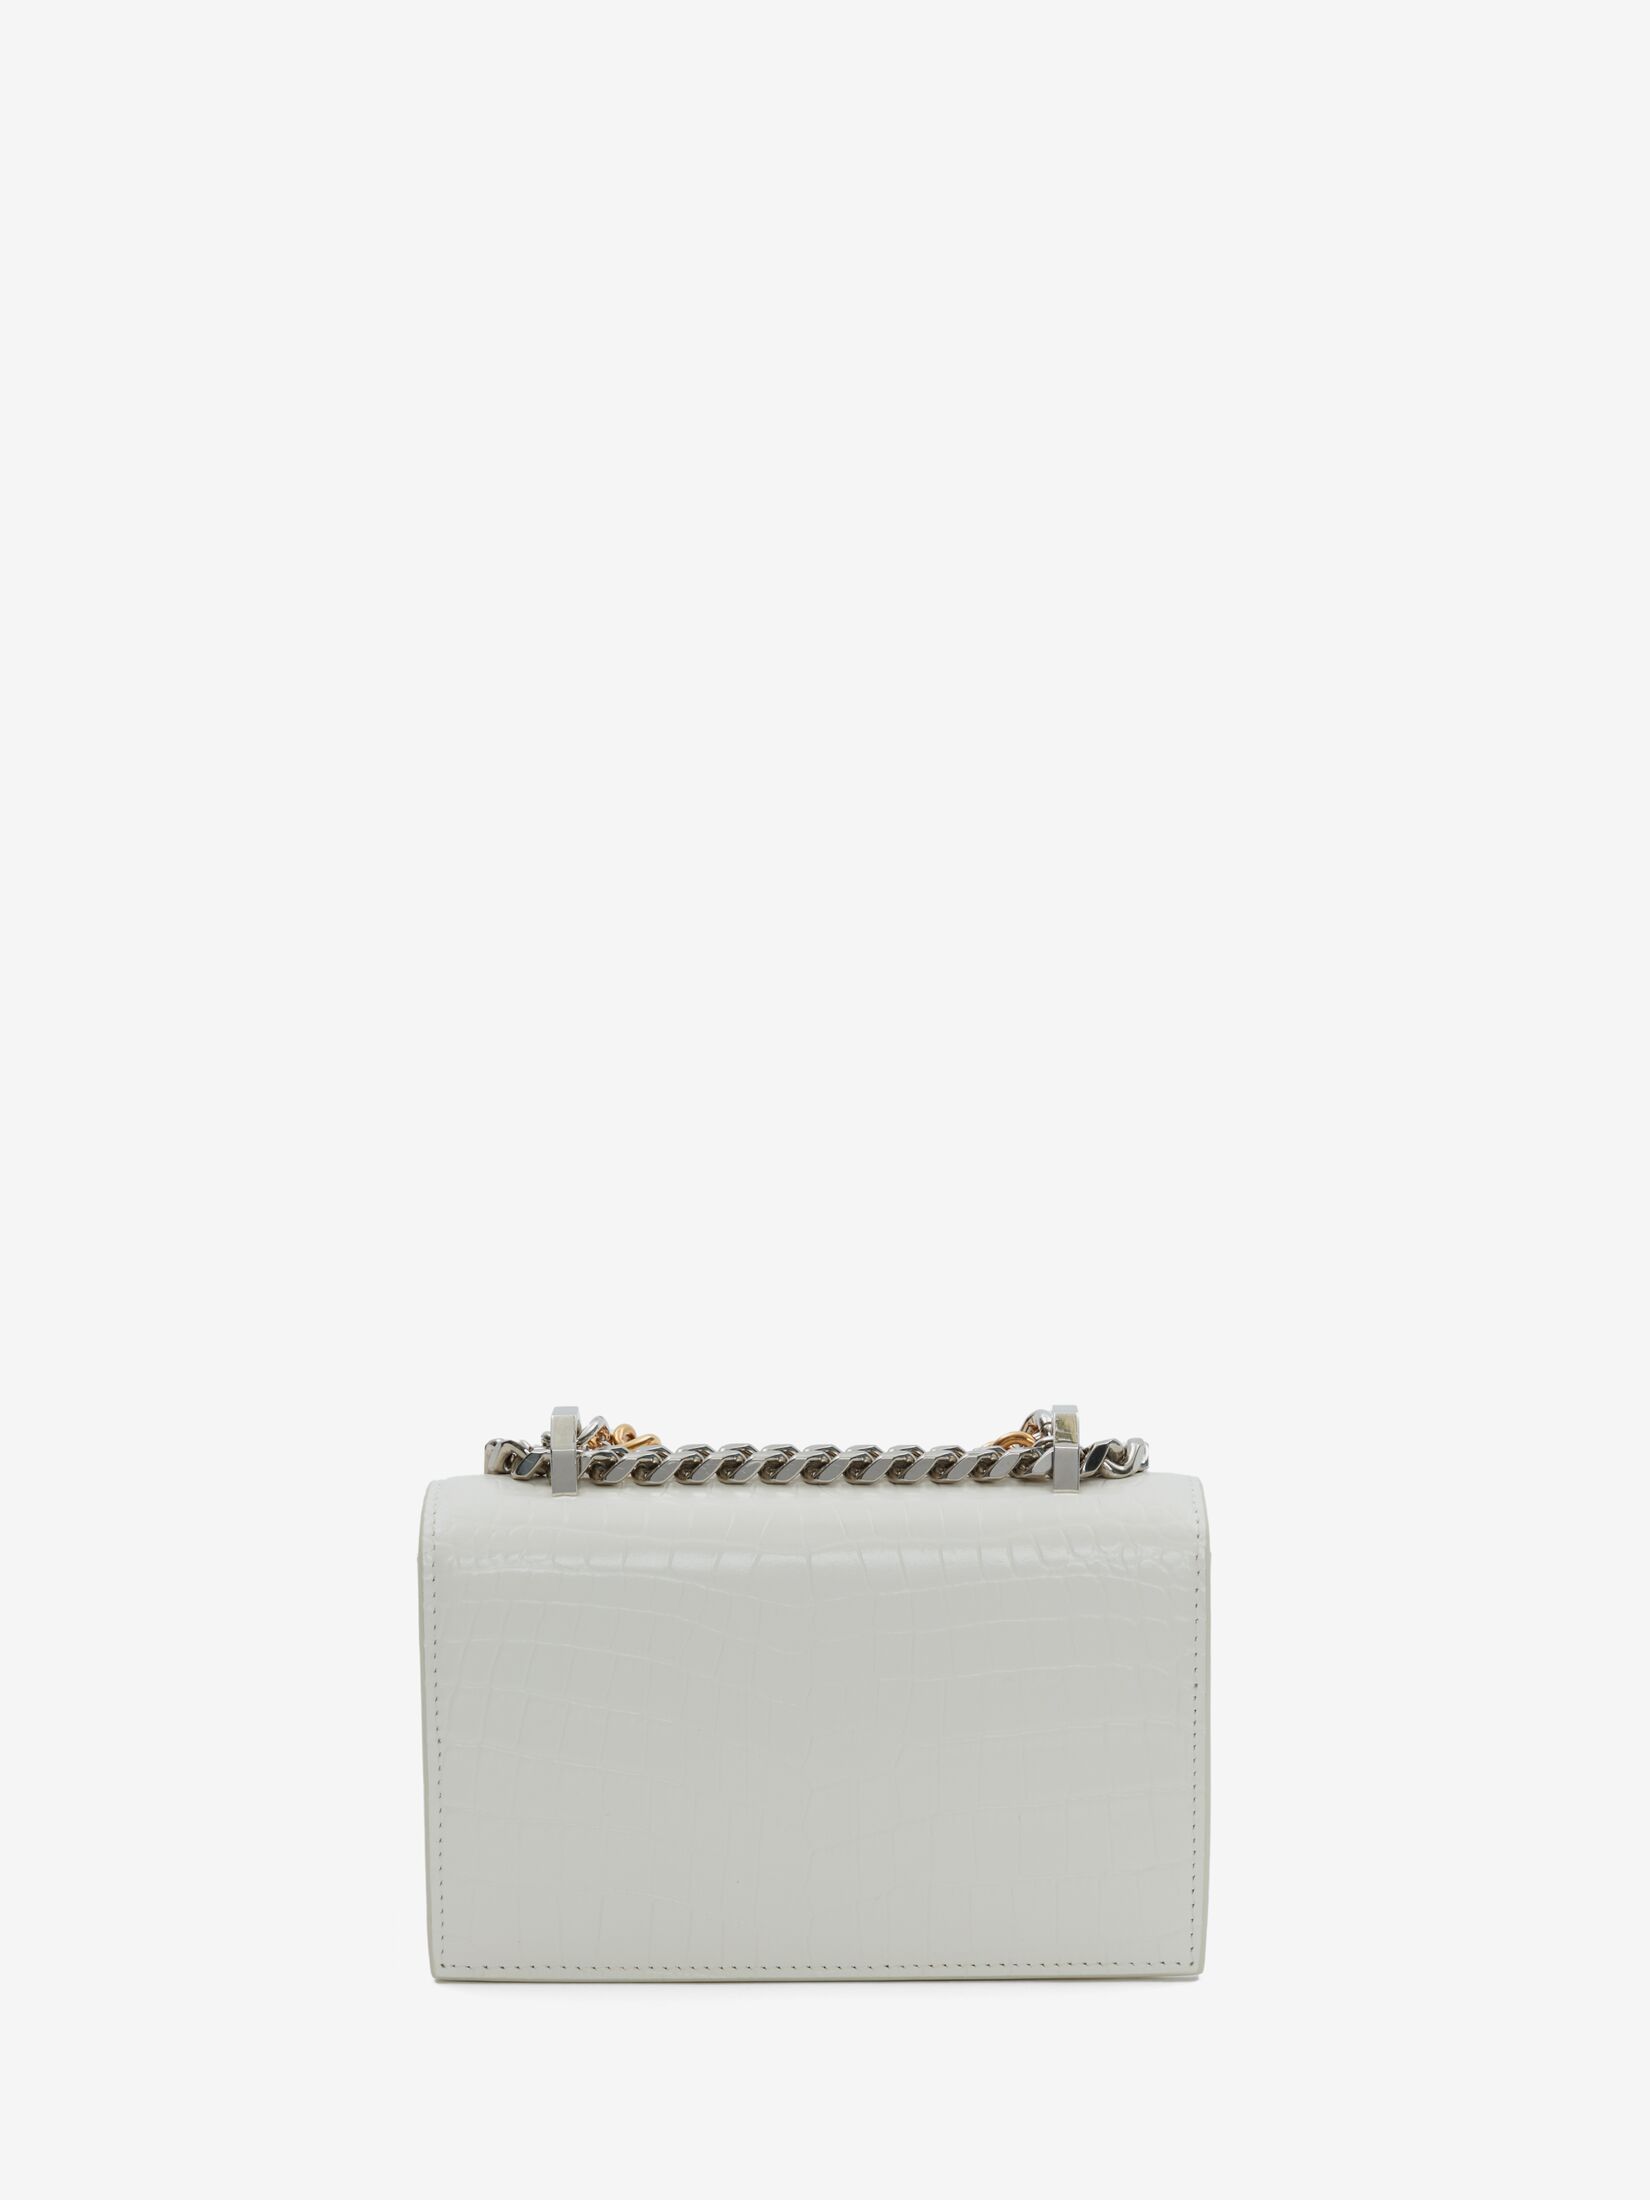 Mini Jewelled Satchel with Chain